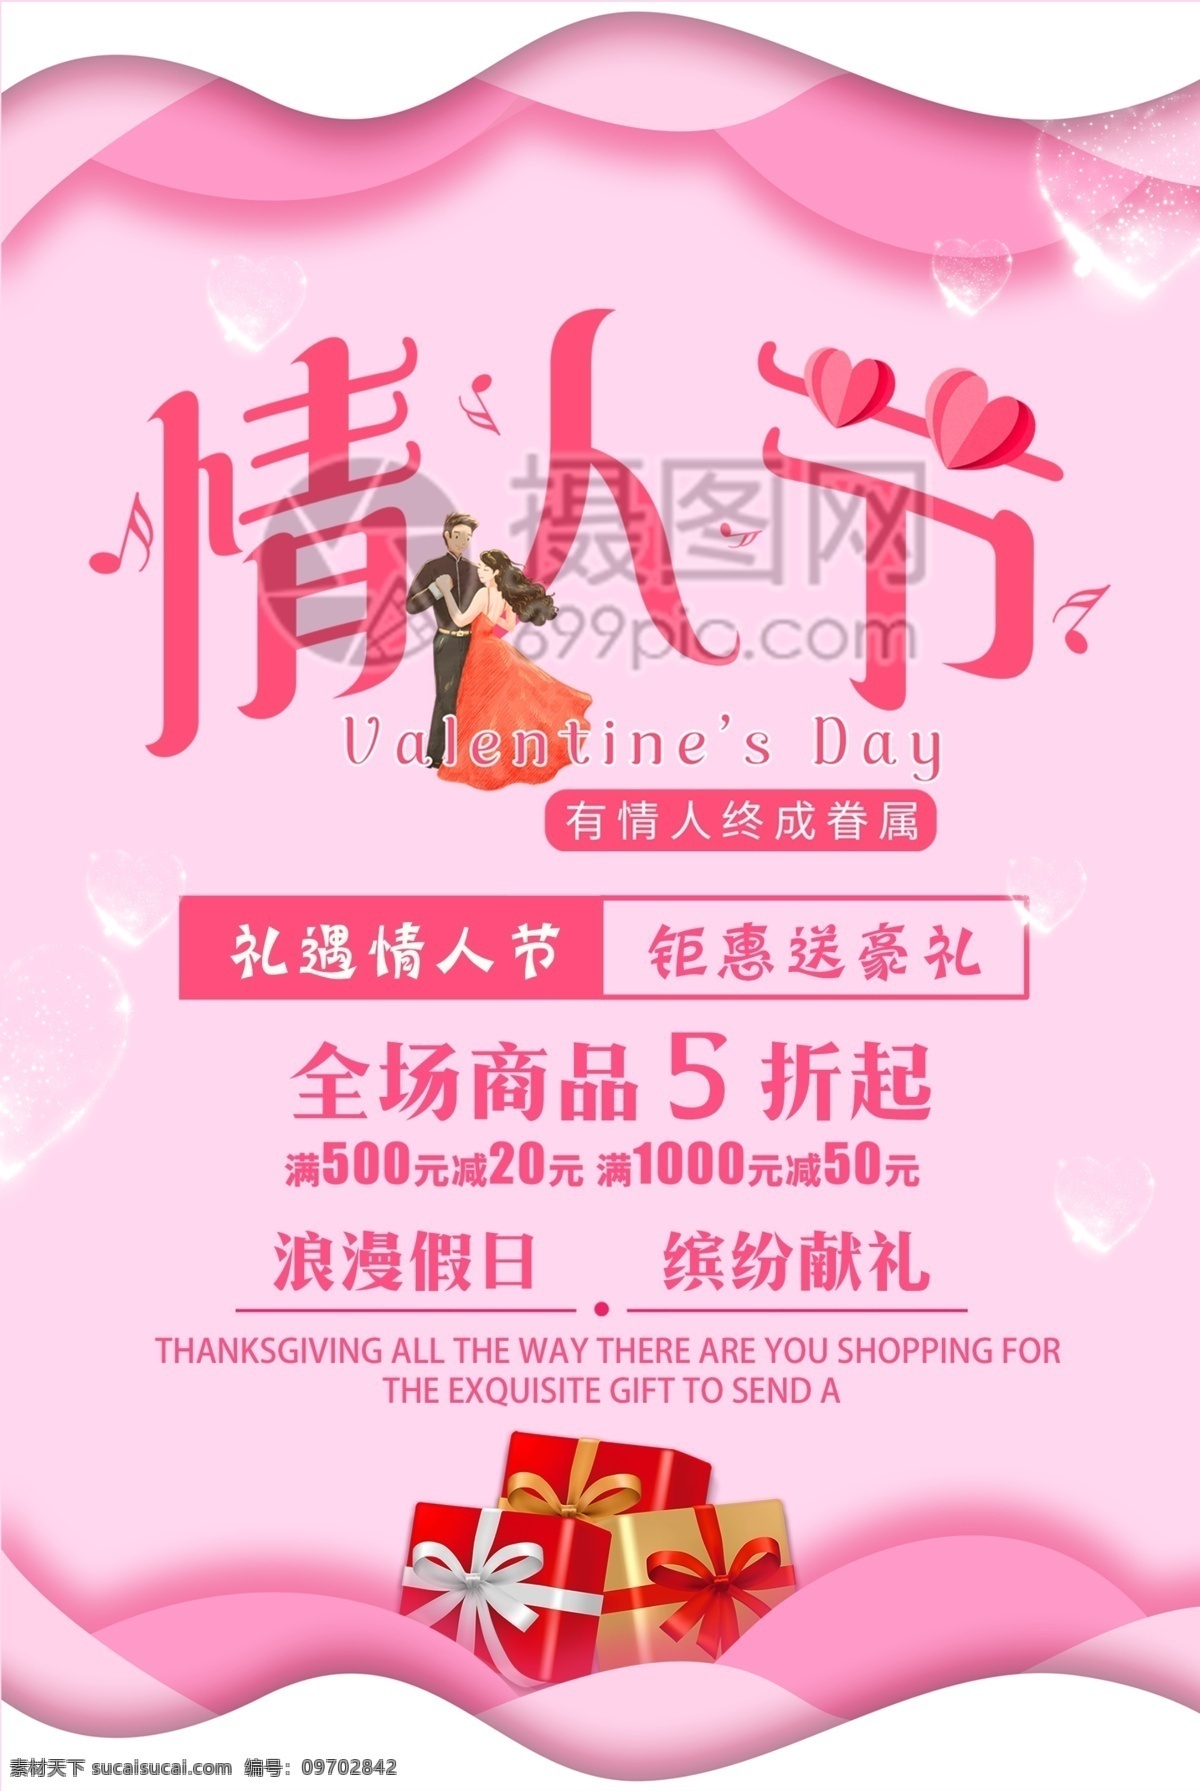 粉色 浪漫 清新 情人节 促销 海报 2.14 情人节促销 节日促销